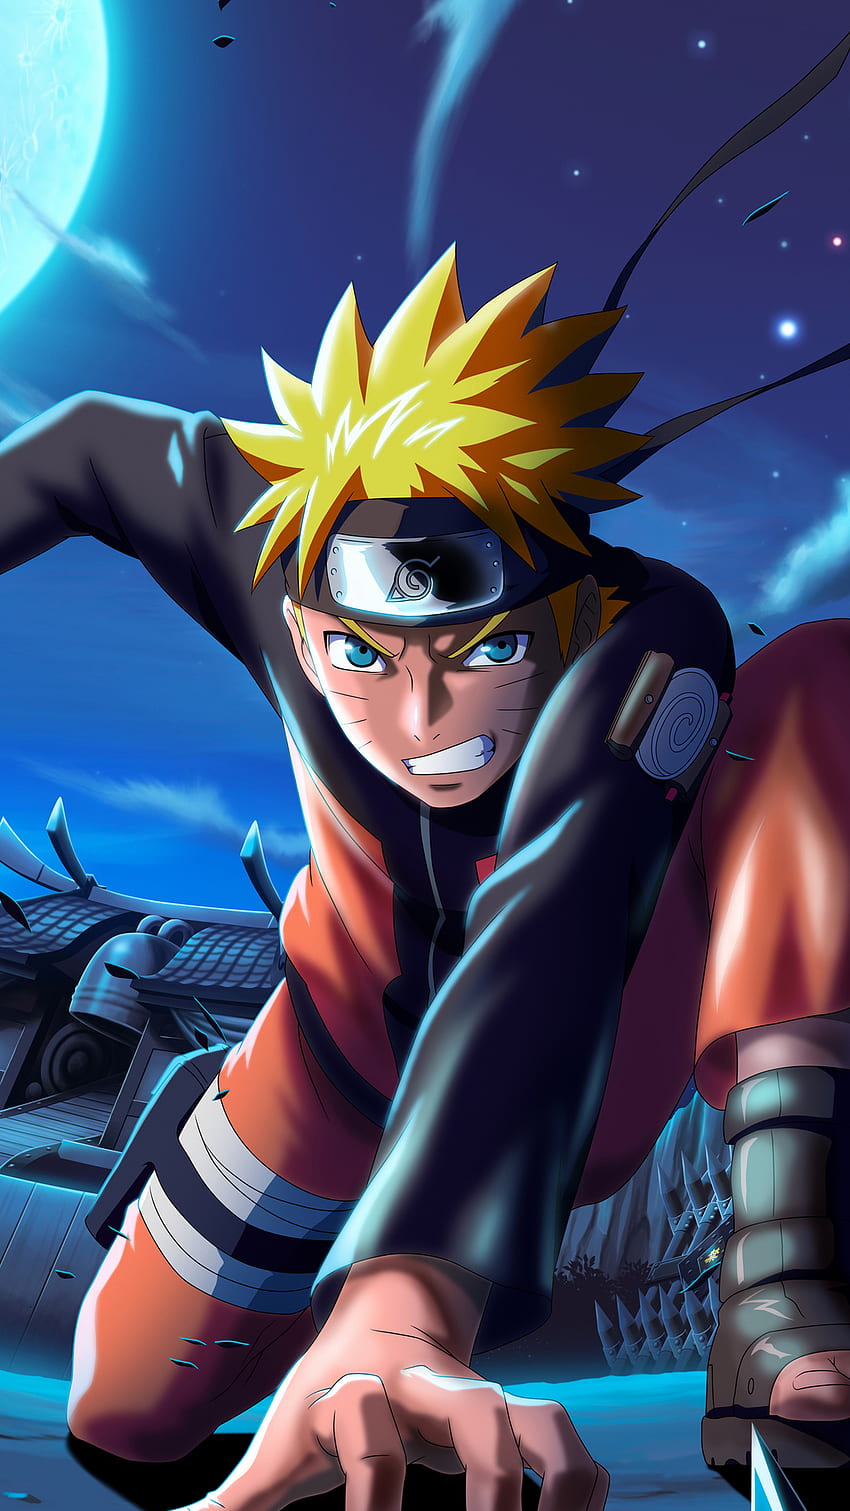 Trò chơi Naruto: Phá vỡ giới hạn và trở thành một ninja thực sự với trò chơi Naruto. Thỏa thích chiến đấu và khám phá thế giới của những nhân vật yêu thích trong Naruto.